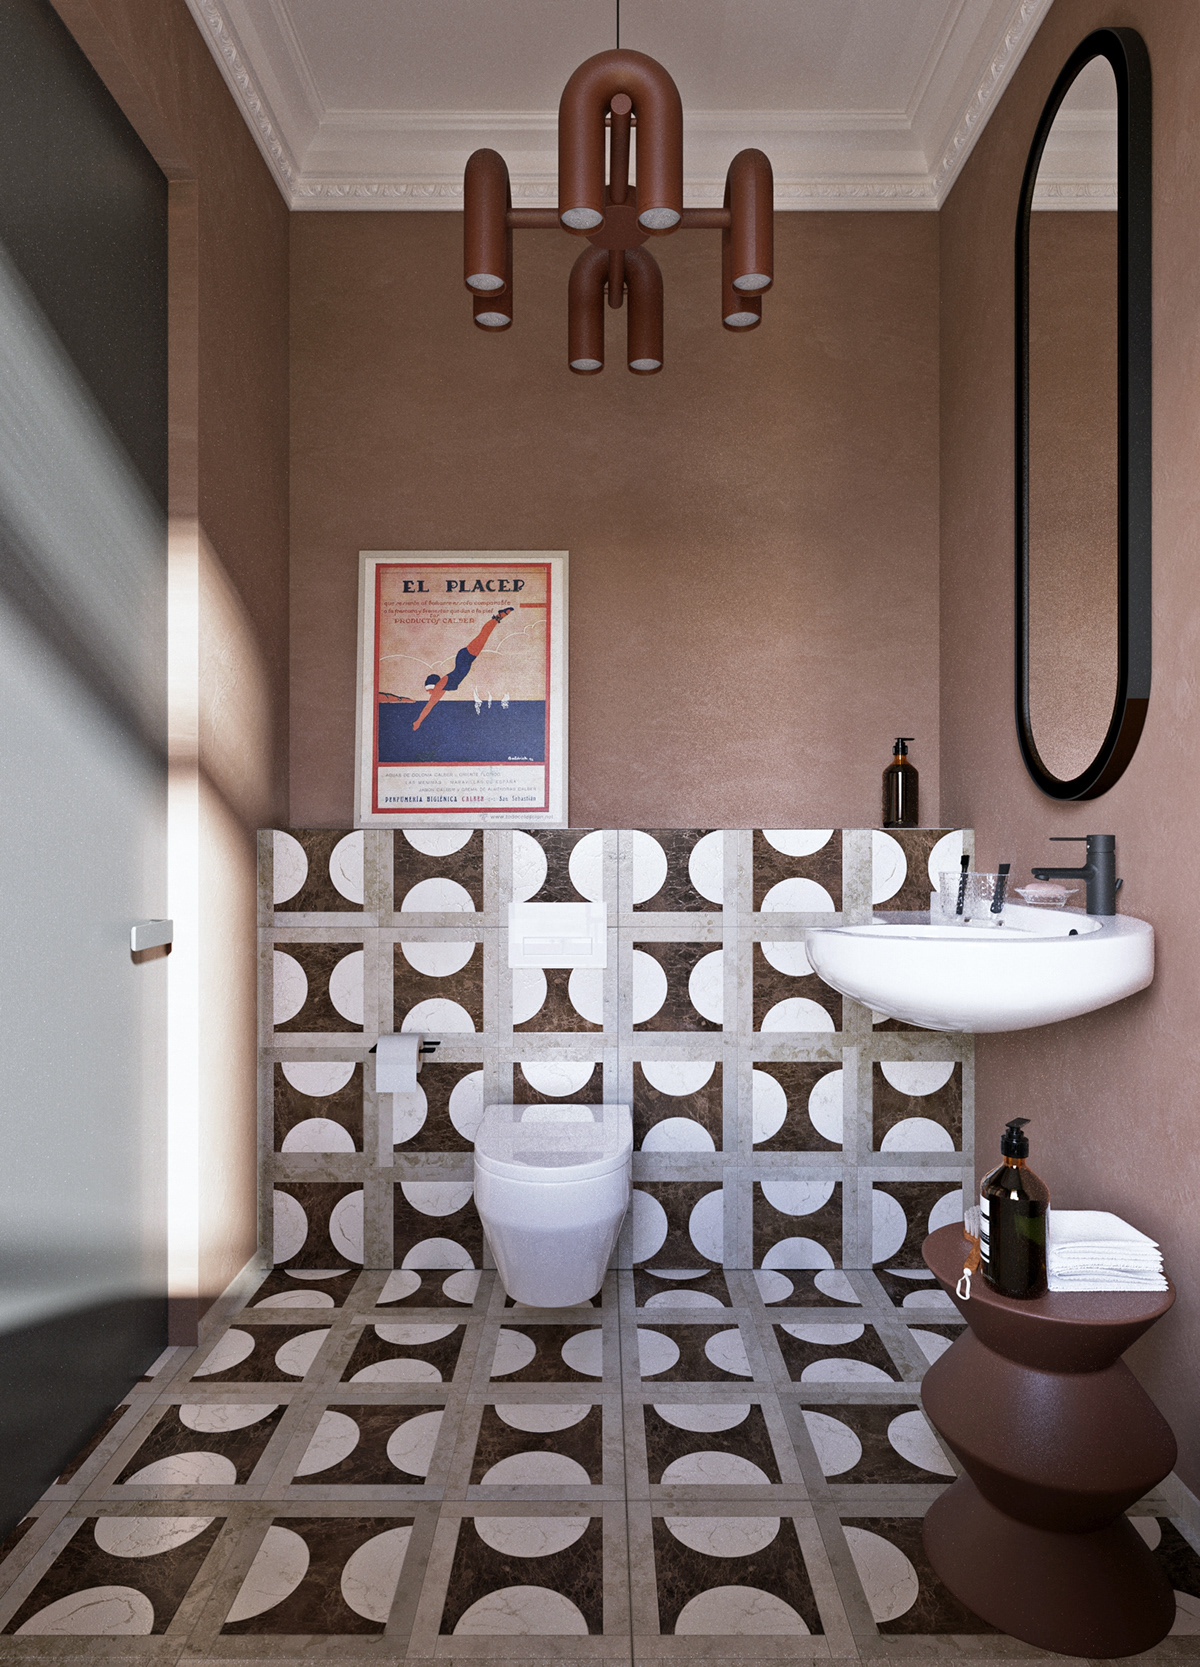 3ds max bathroom design Interior interior design  mid century modern Render toilet visualization